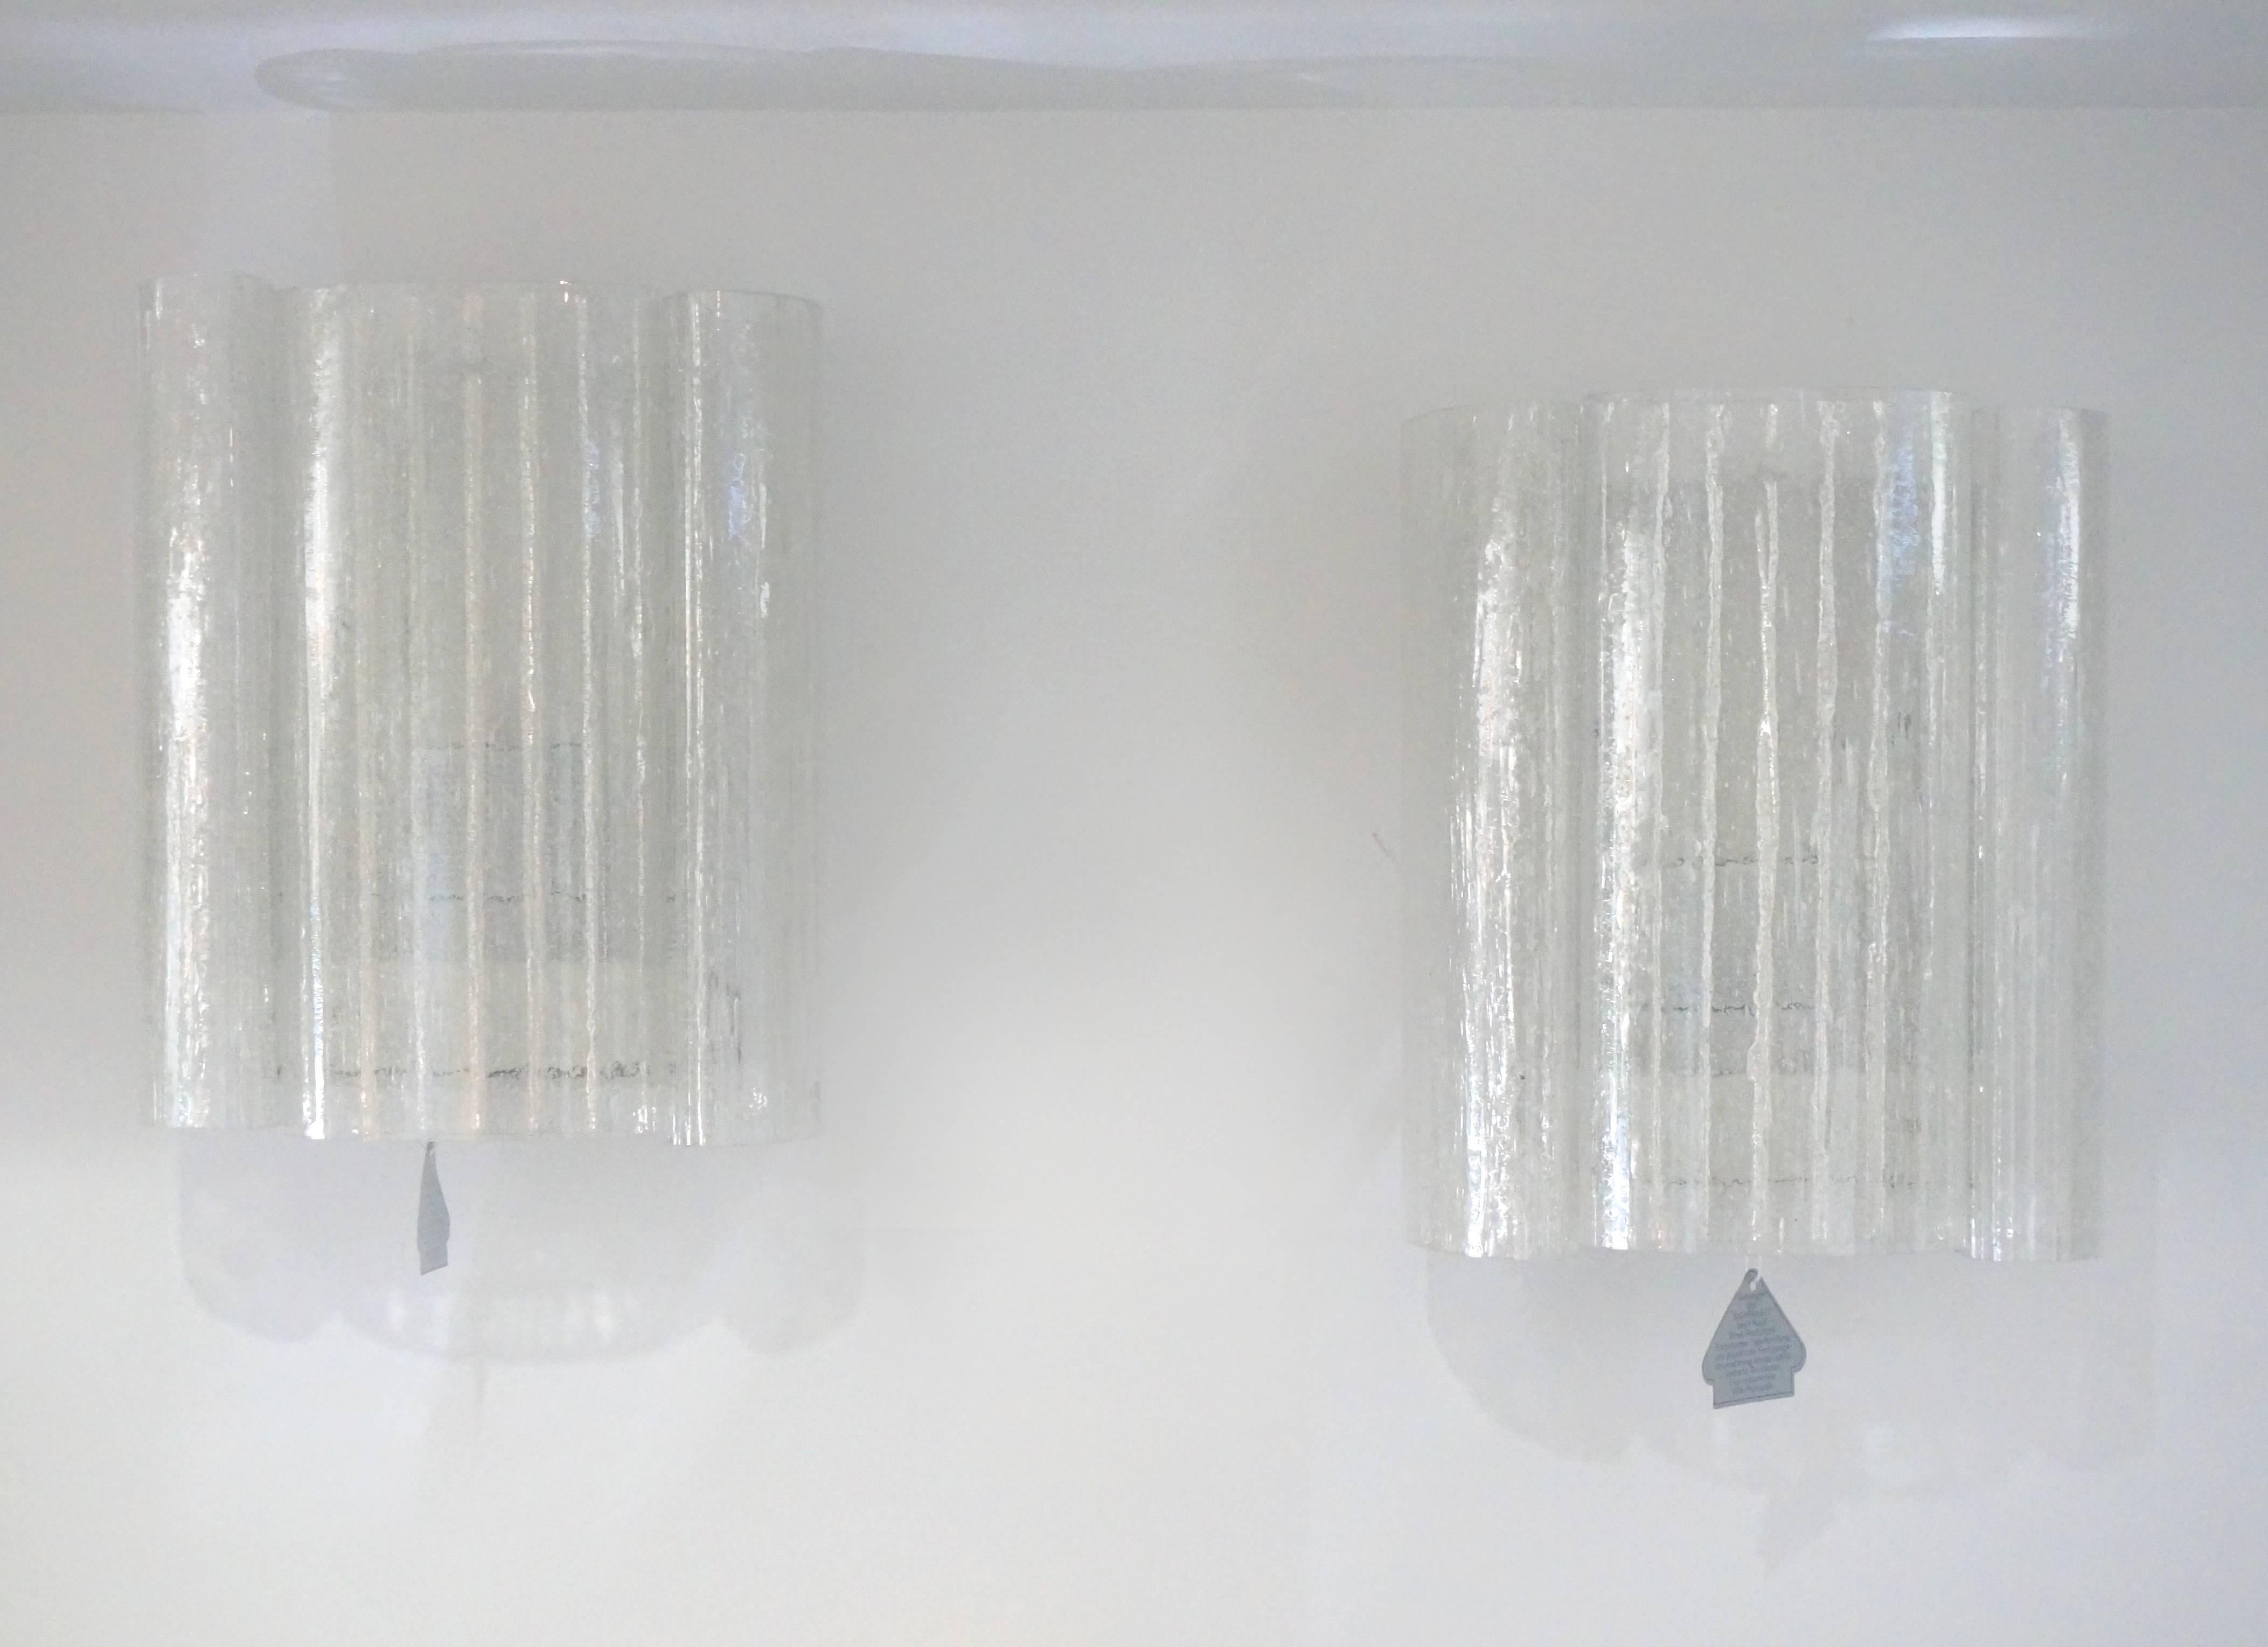 Dieses Paar Wandleuchten stammt aus den 1960er Jahren und wurde von der berühmten Firma Doria Leuchten hergestellt. Jede Leuchte besteht aus drei geformten Gläsern mit einer Eiskristall-Struktur. Die Glasteile sind außen flach und innen mit einem